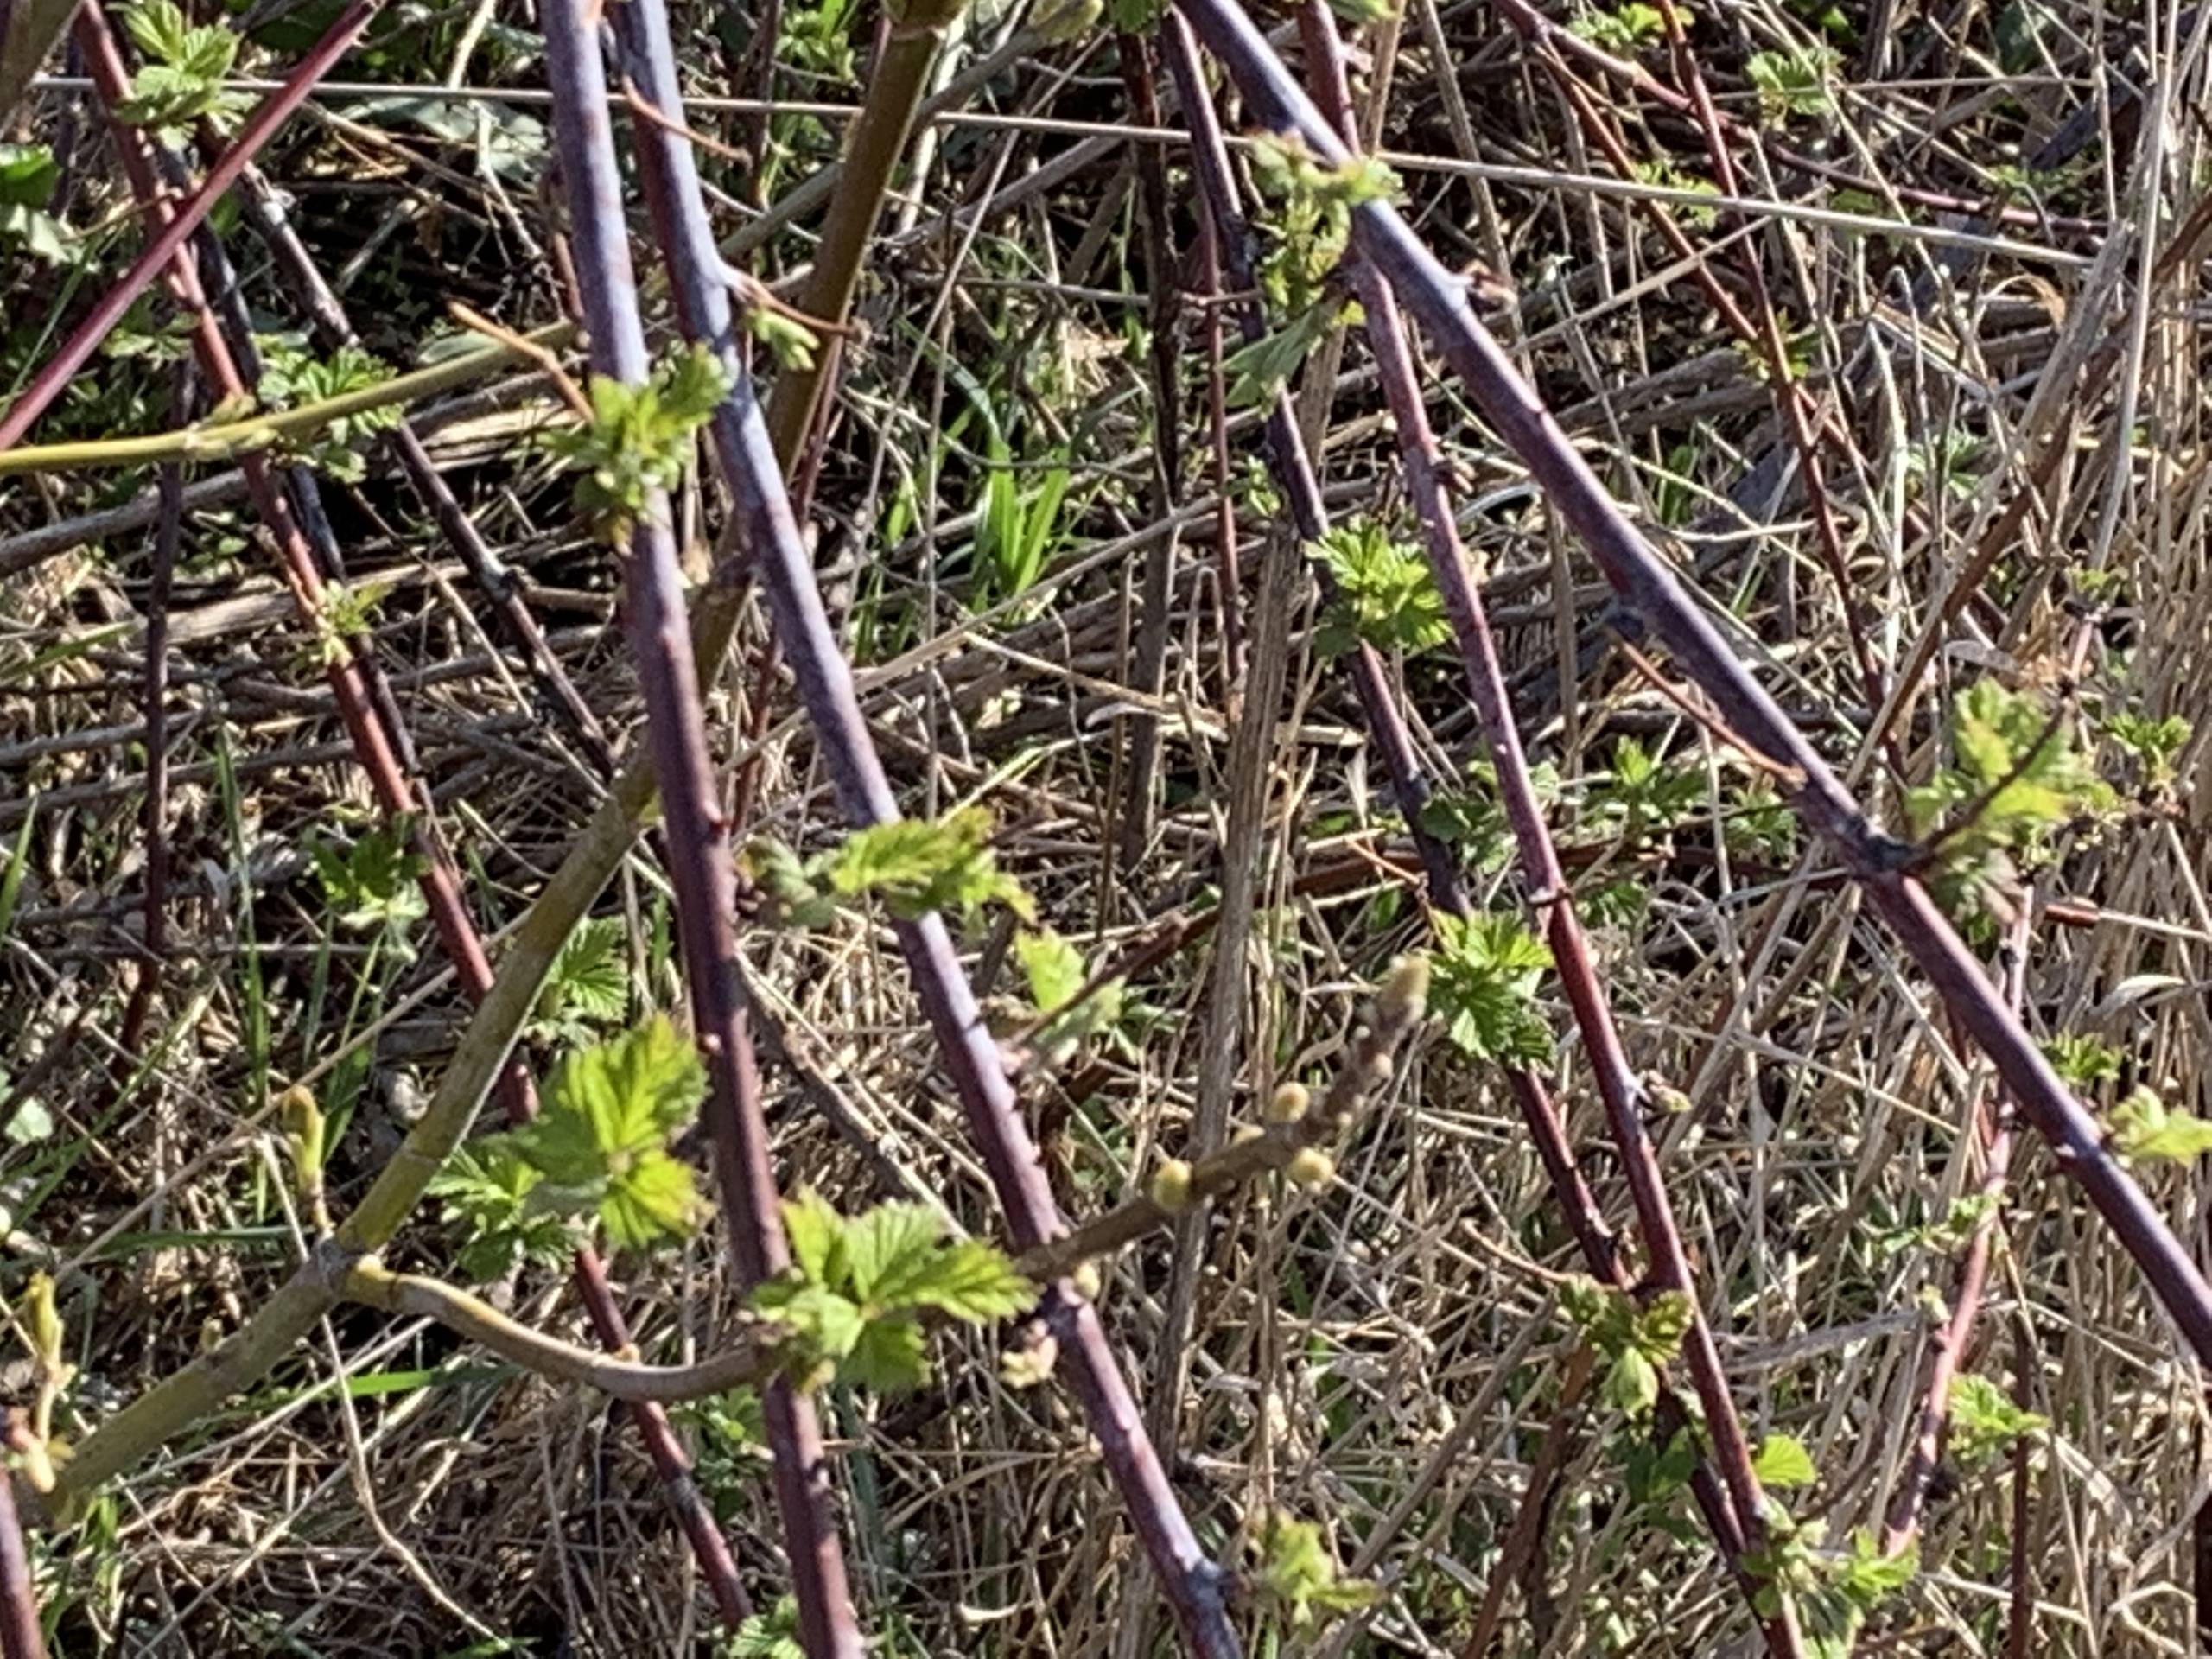 New blackberry leaves